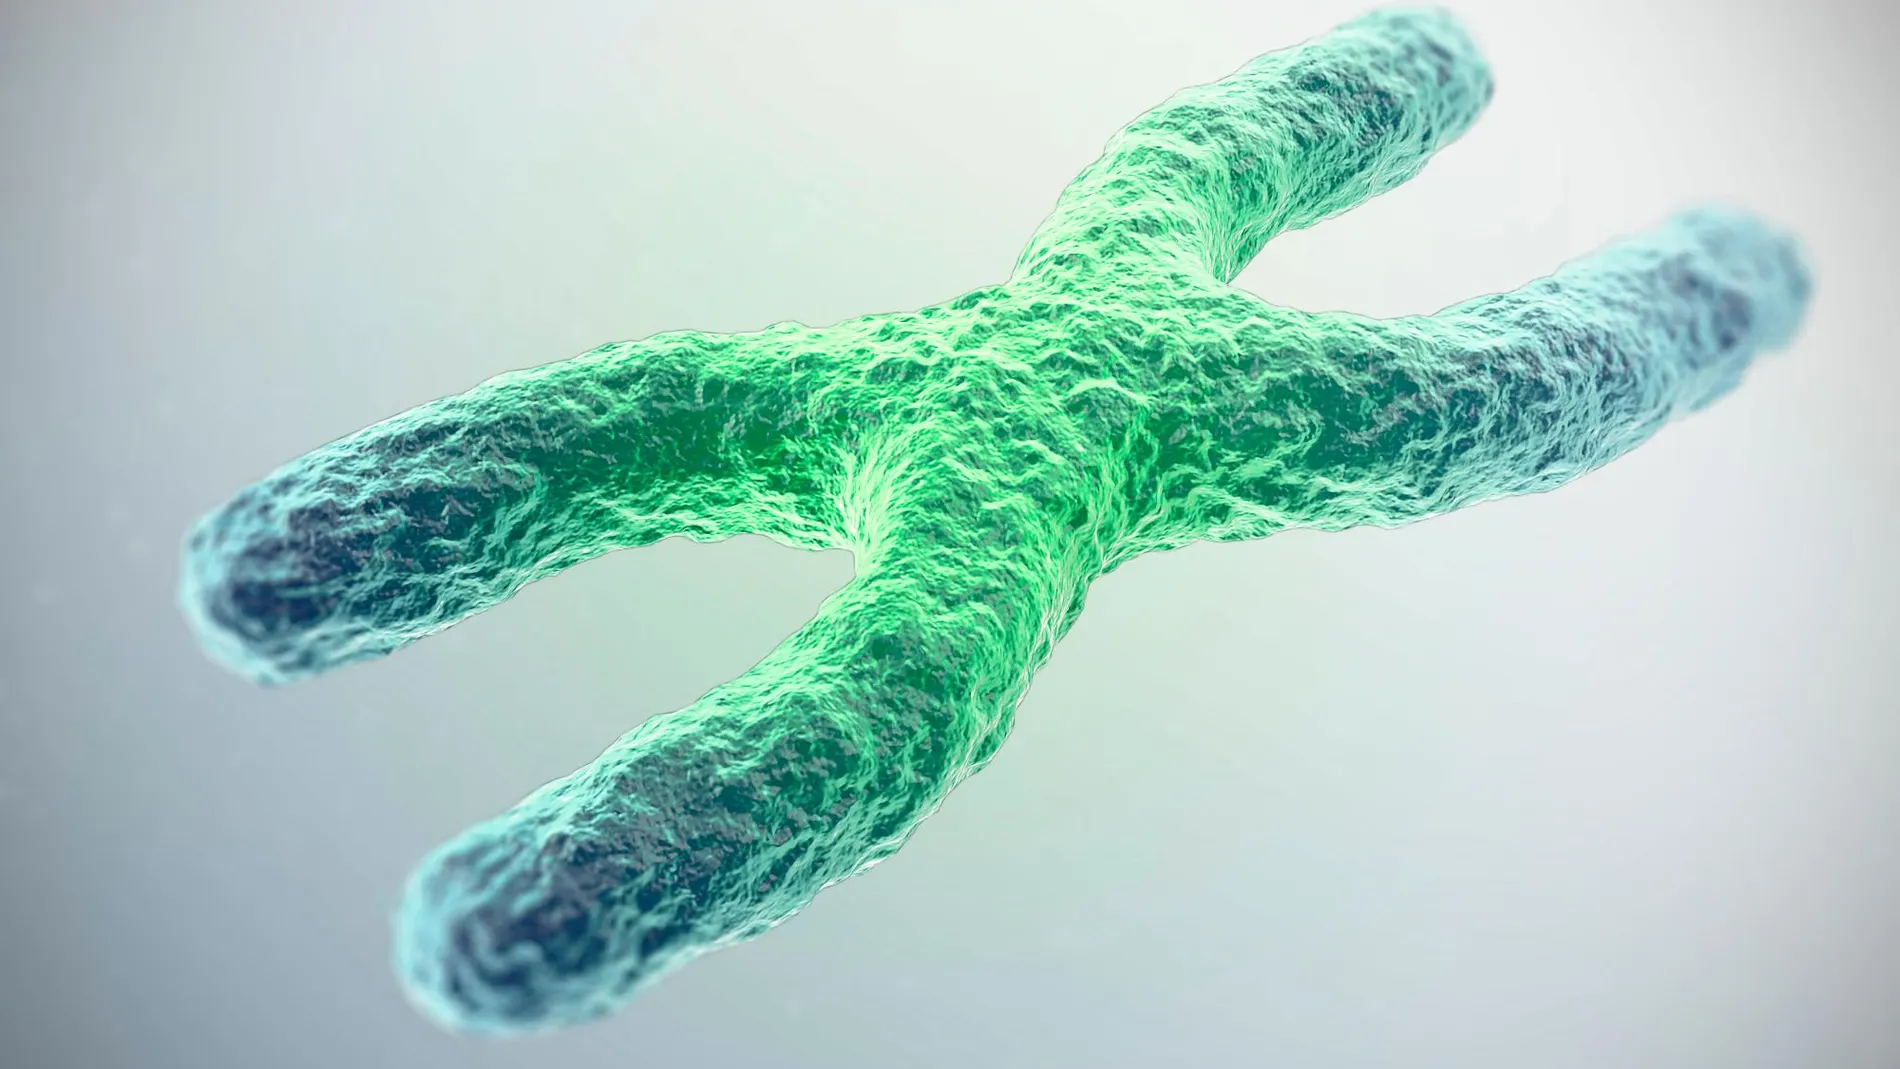 Los telémeros son los extremos cromosomas y su función principal es proteger el material genético que porta el resto del cromosoma